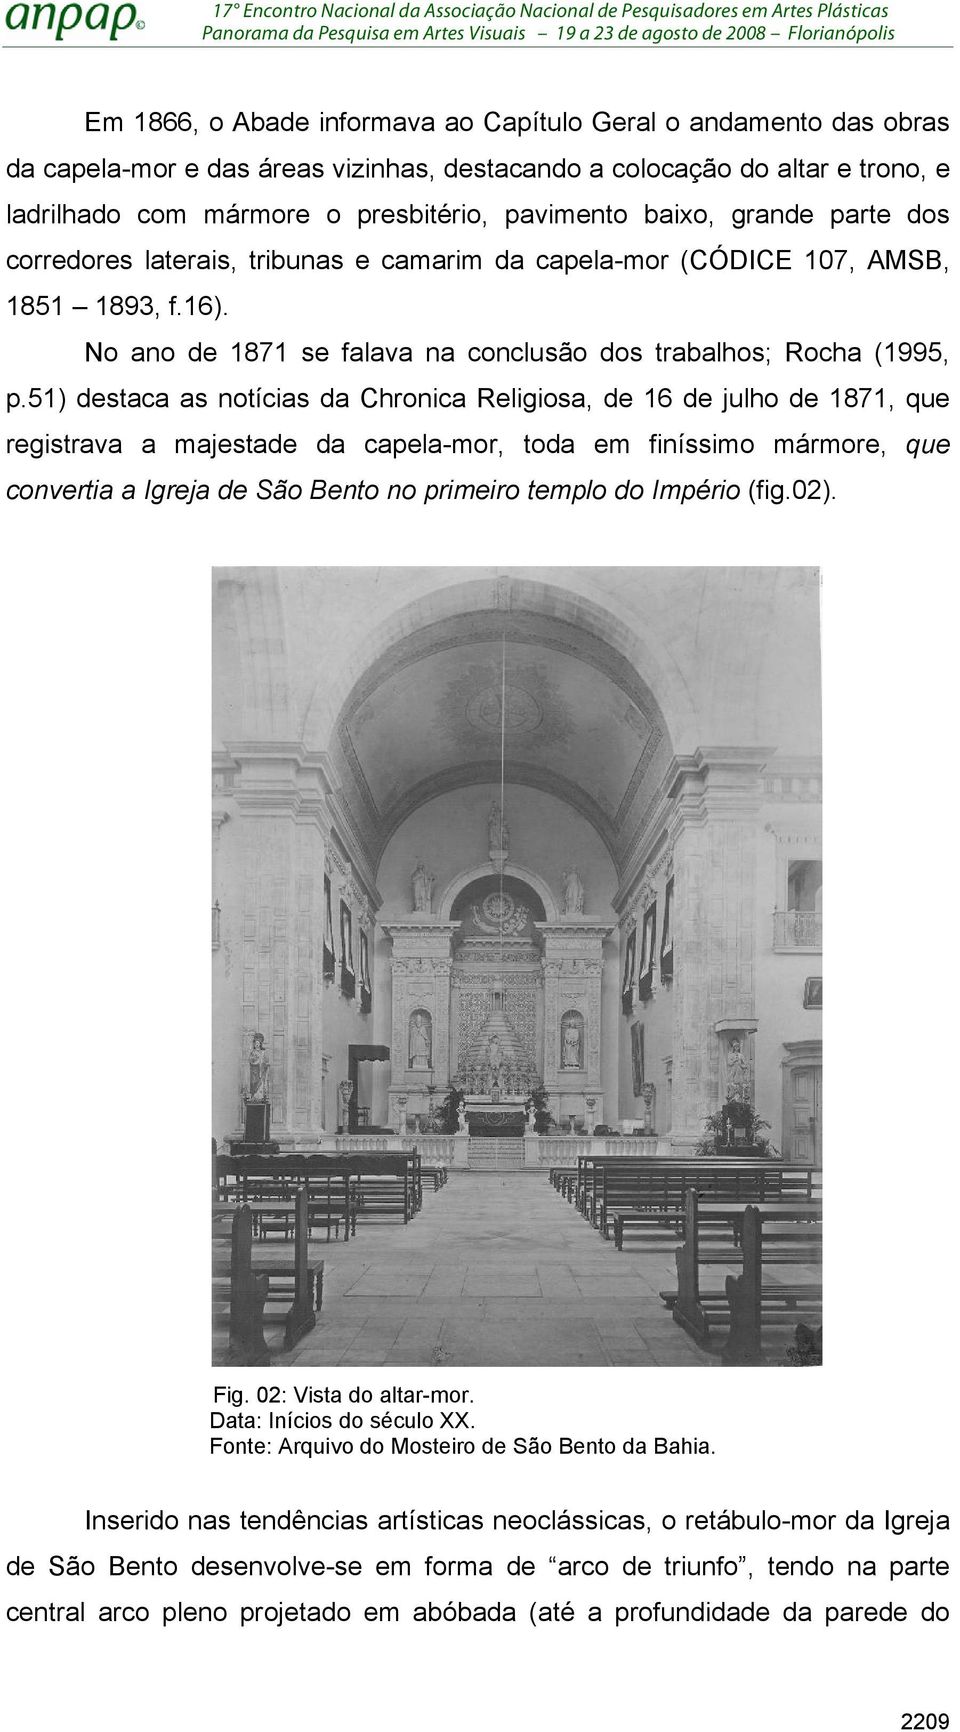 51) destaca as notícias da Chronica Religiosa, de 16 de julho de 1871, que registrava a majestade da capela-mor, toda em finíssimo mármore, que convertia a Igreja de São Bento no primeiro templo do